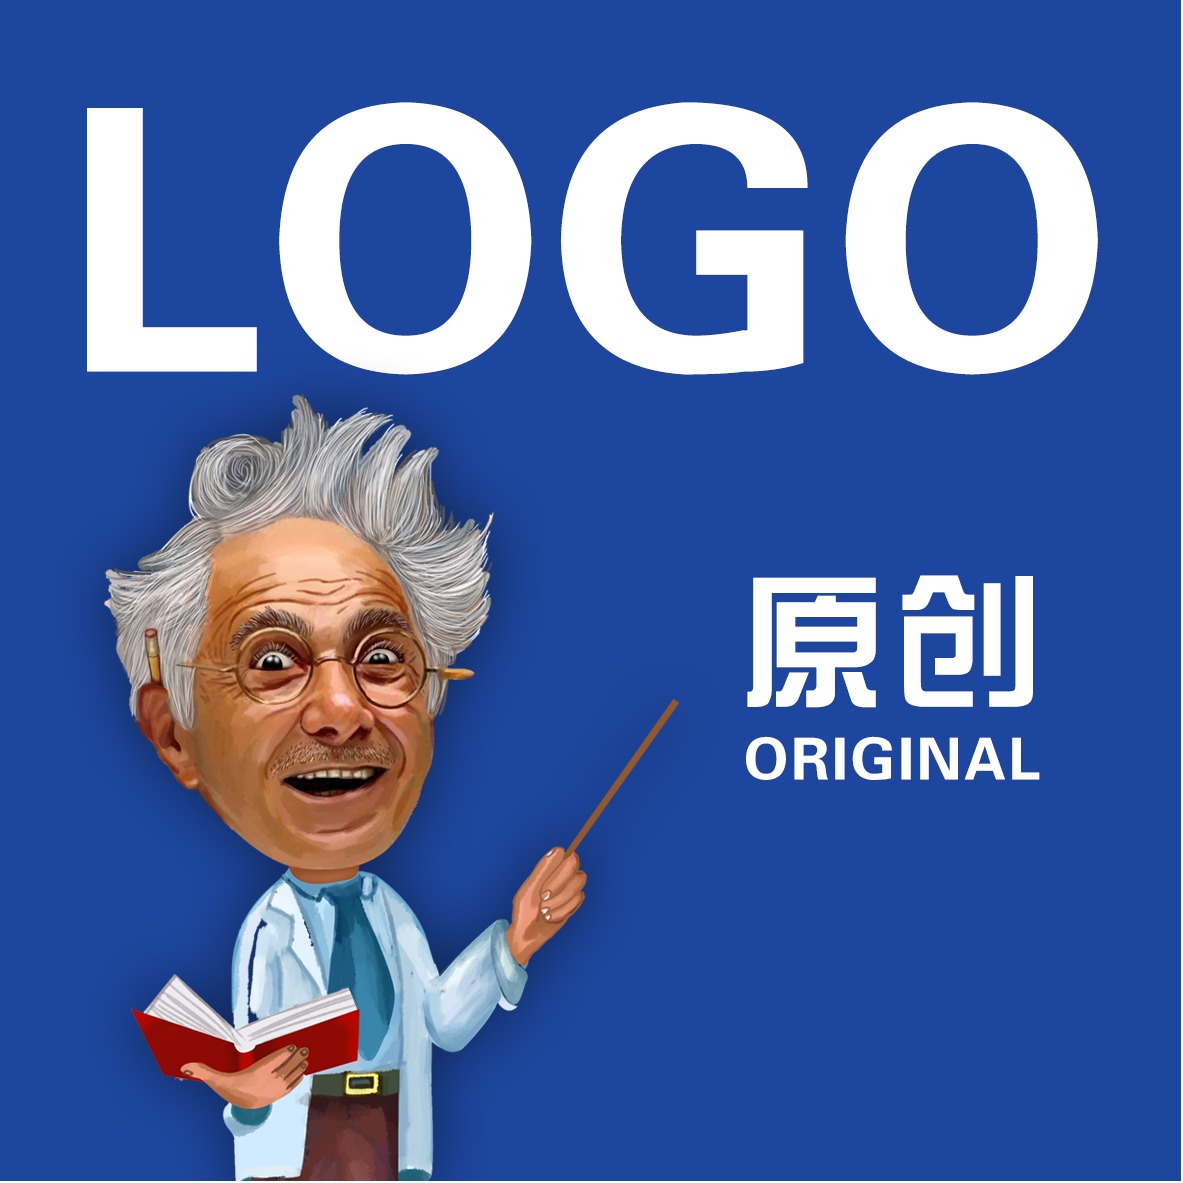 零售百货 LOGO网店/微店 产品/品牌 卡通LOGO